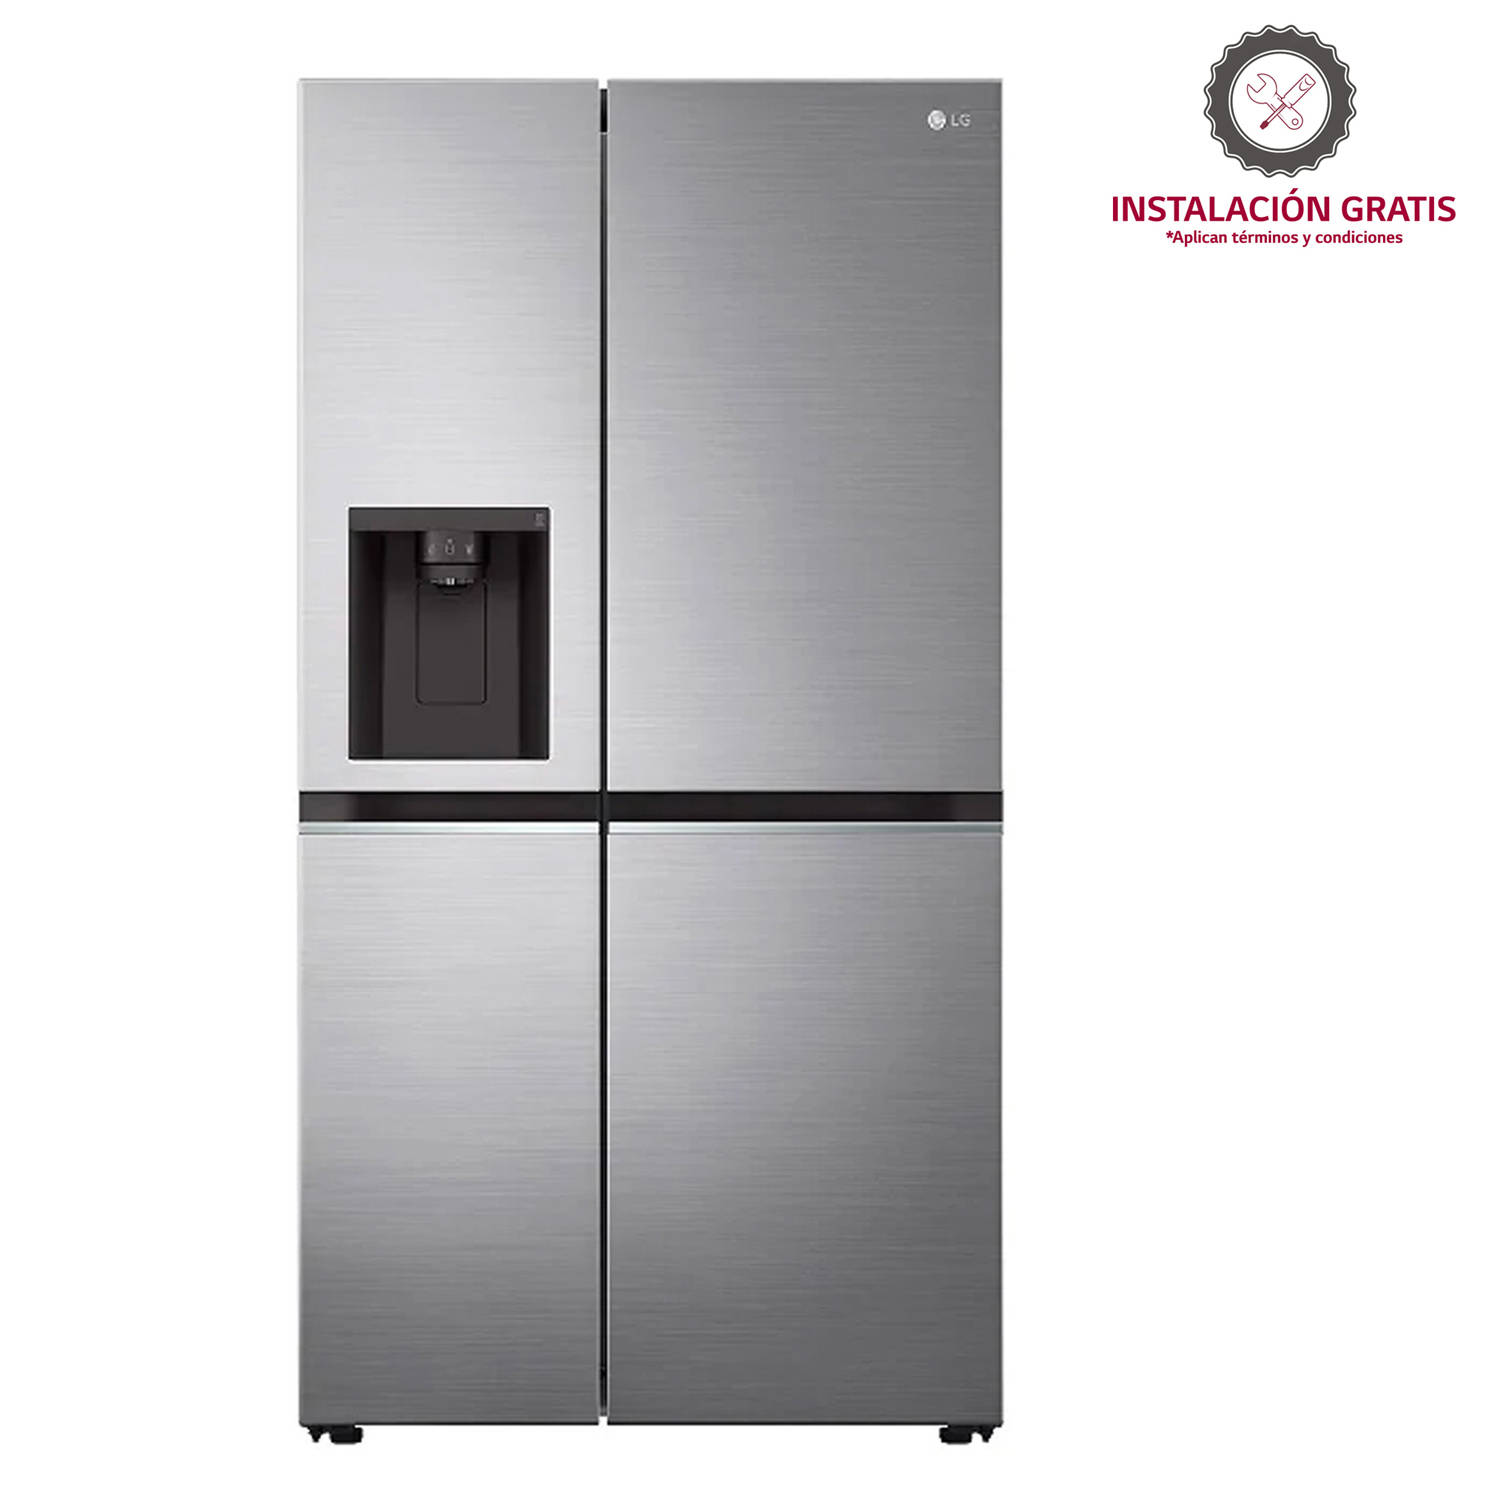 Organiza así tu refrigerador Side by Side - Somos Falabella